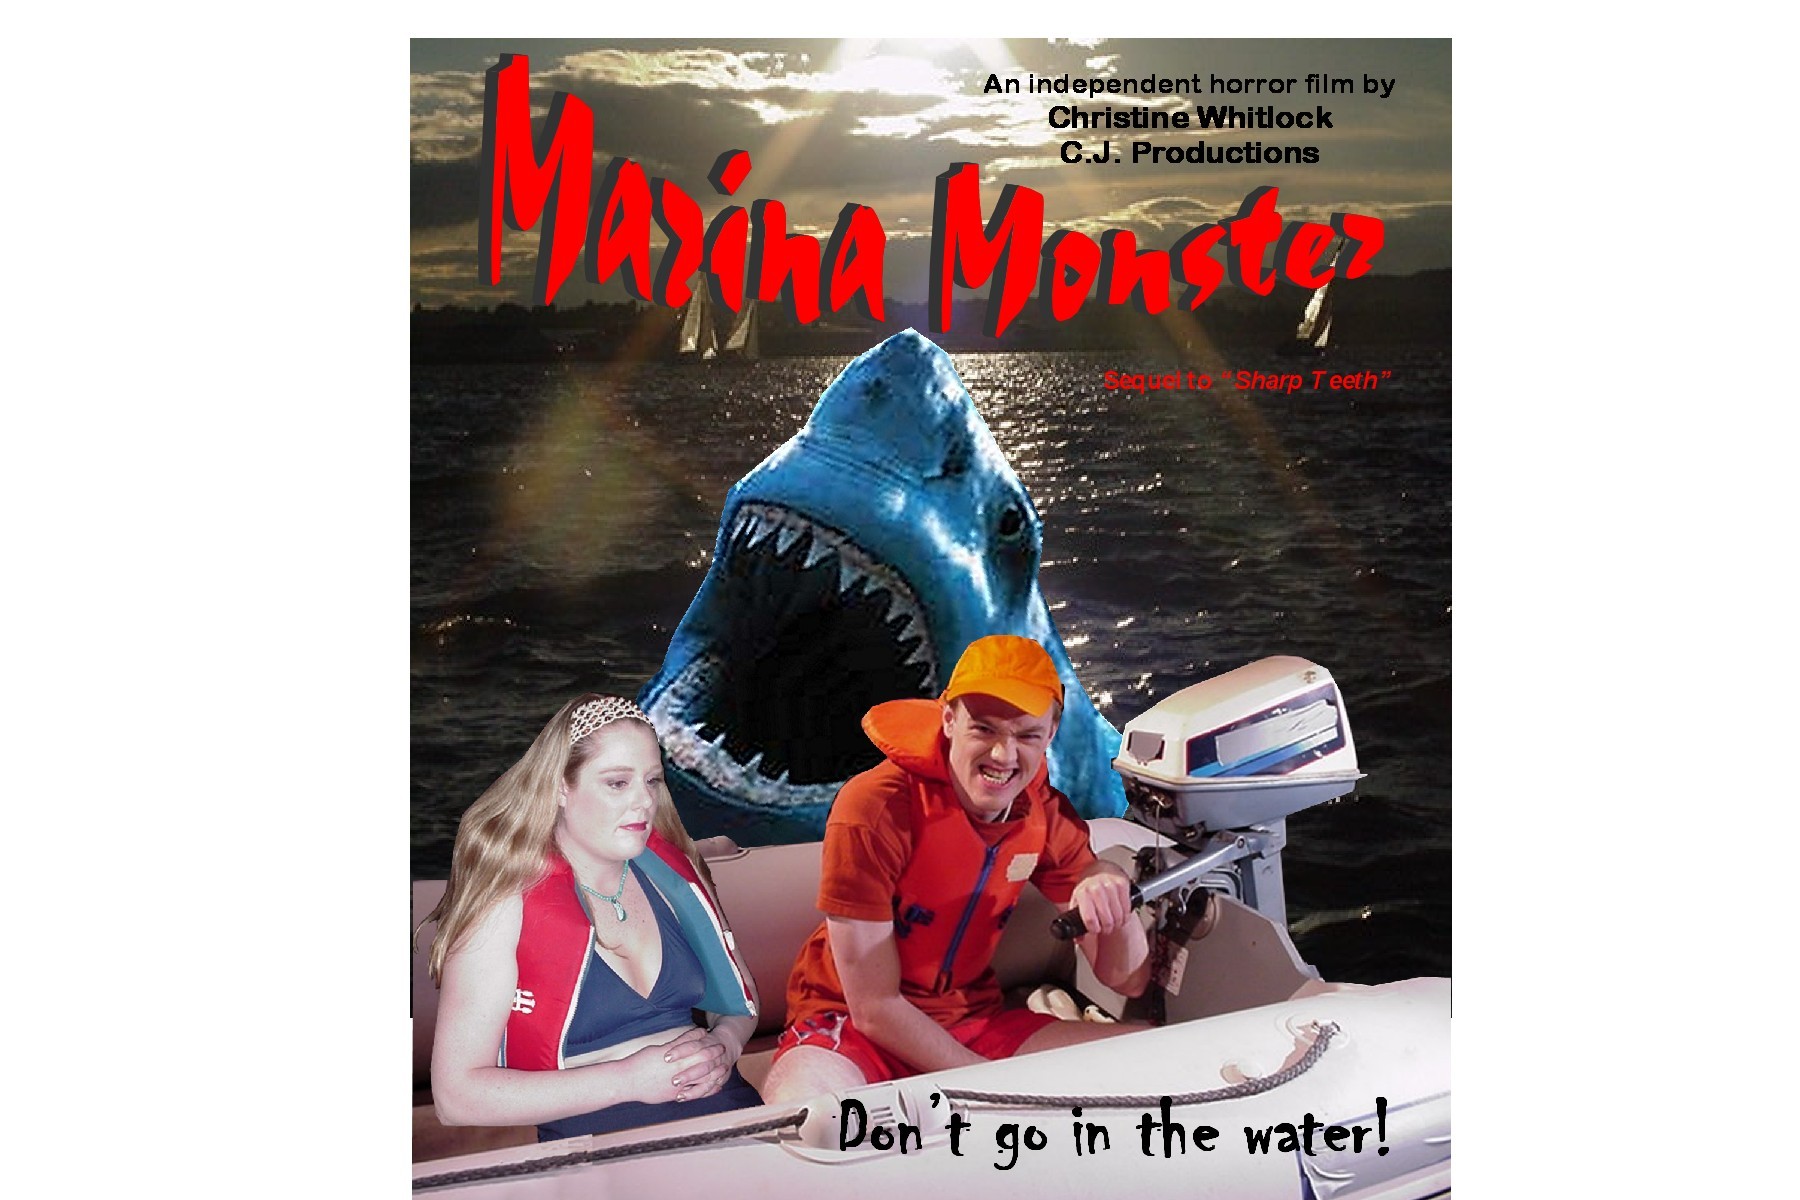 Marina Monster Poster